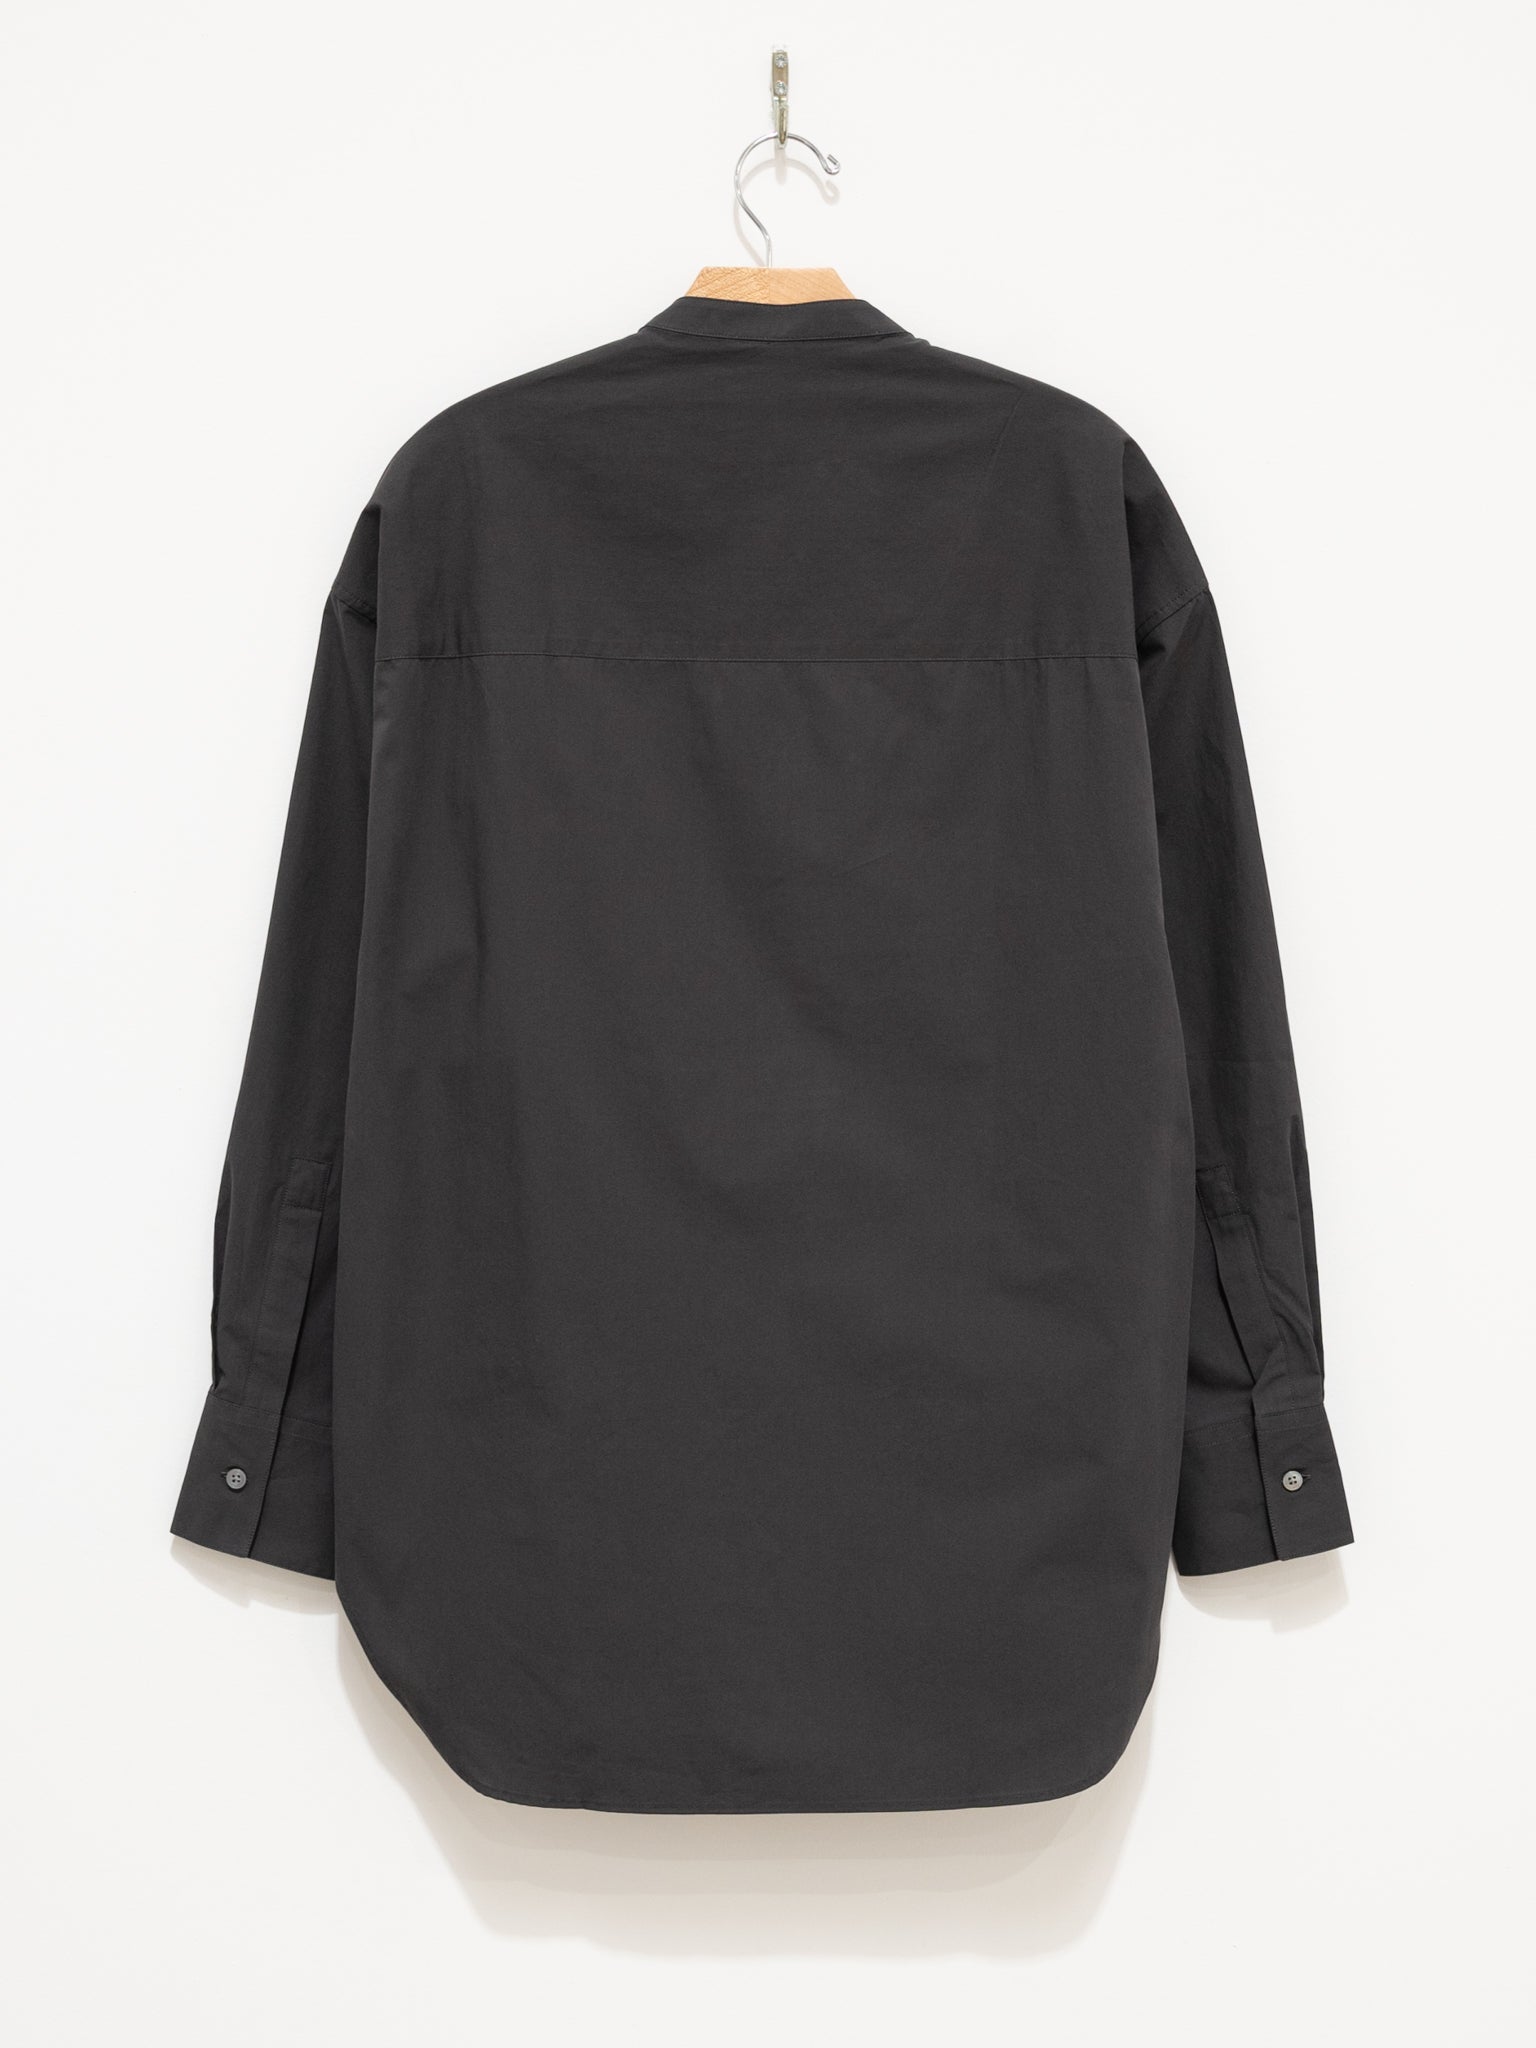 Namu Shop - Studio Nicholson Frink Half Placket Shirt - Asphalt